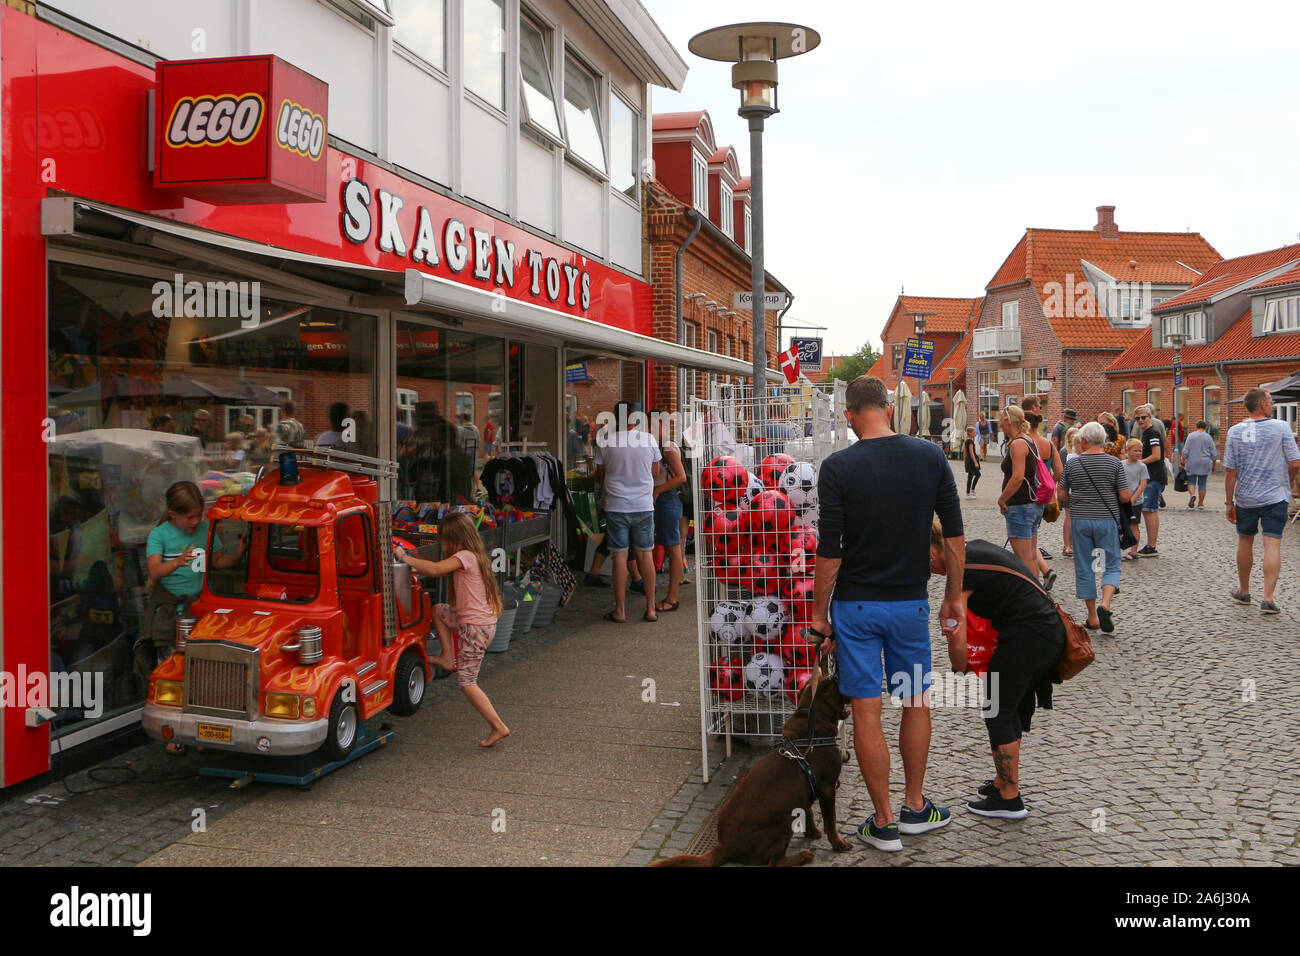 Lego Skagen Spielzeug Shop ist in Skagen, Dänemark am 28. Juli 2019 Skagen ist die nördlichste Stadt Dänemarks, an der Ostküste der Halbinsel Skagen Odde ganz im Norden von Jütland. © Michal Fludra/Alamy leben Nachrichten Stockfoto